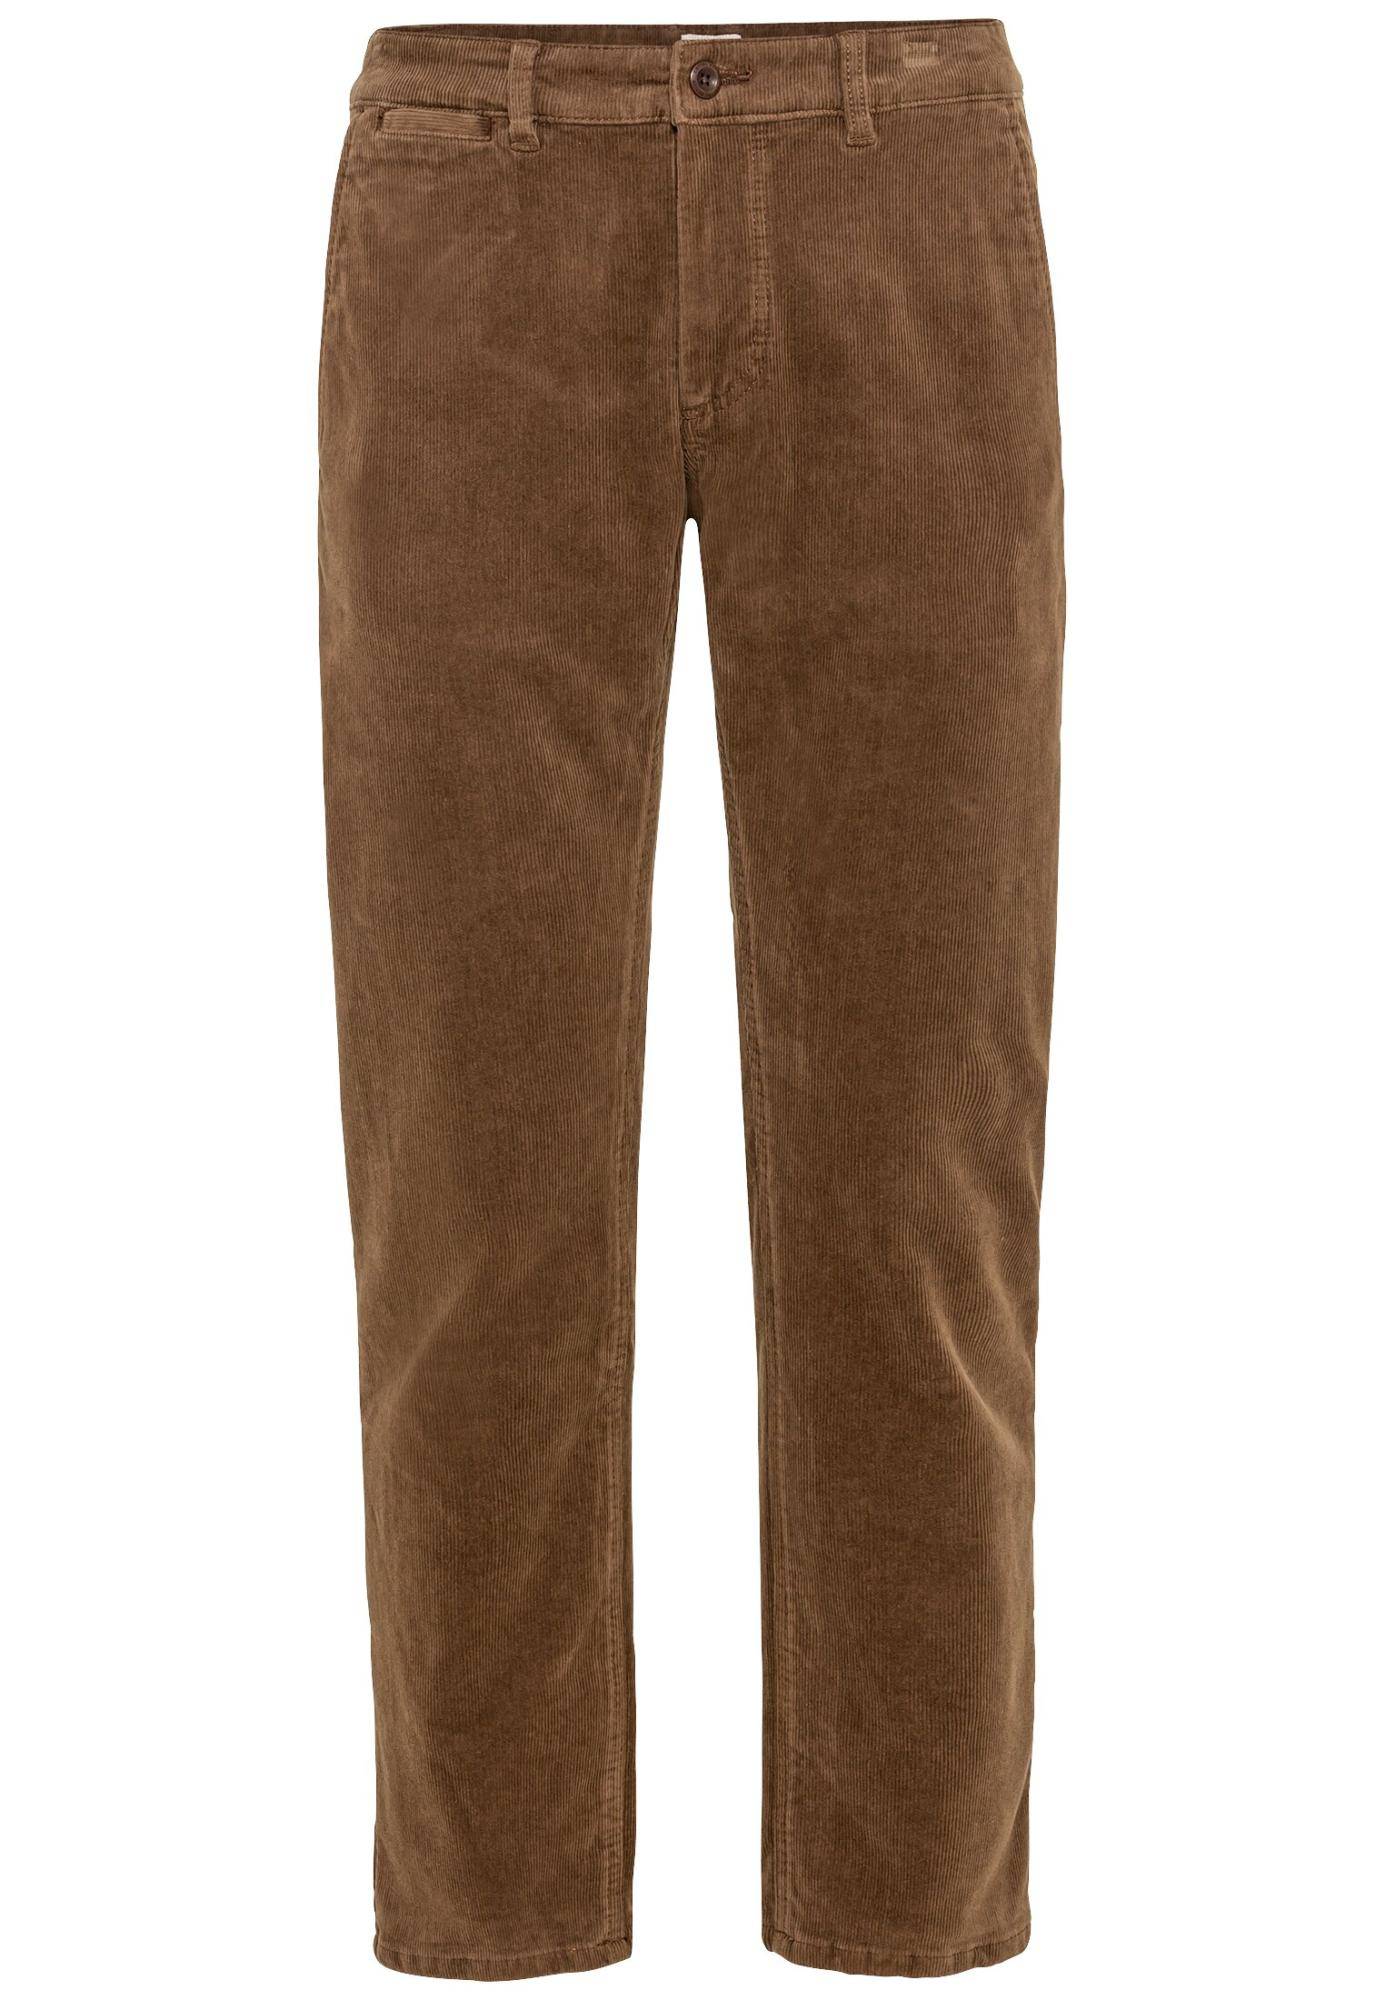 Мужские брюки Camel Active, коричневые, цвет коричневый, размер 44